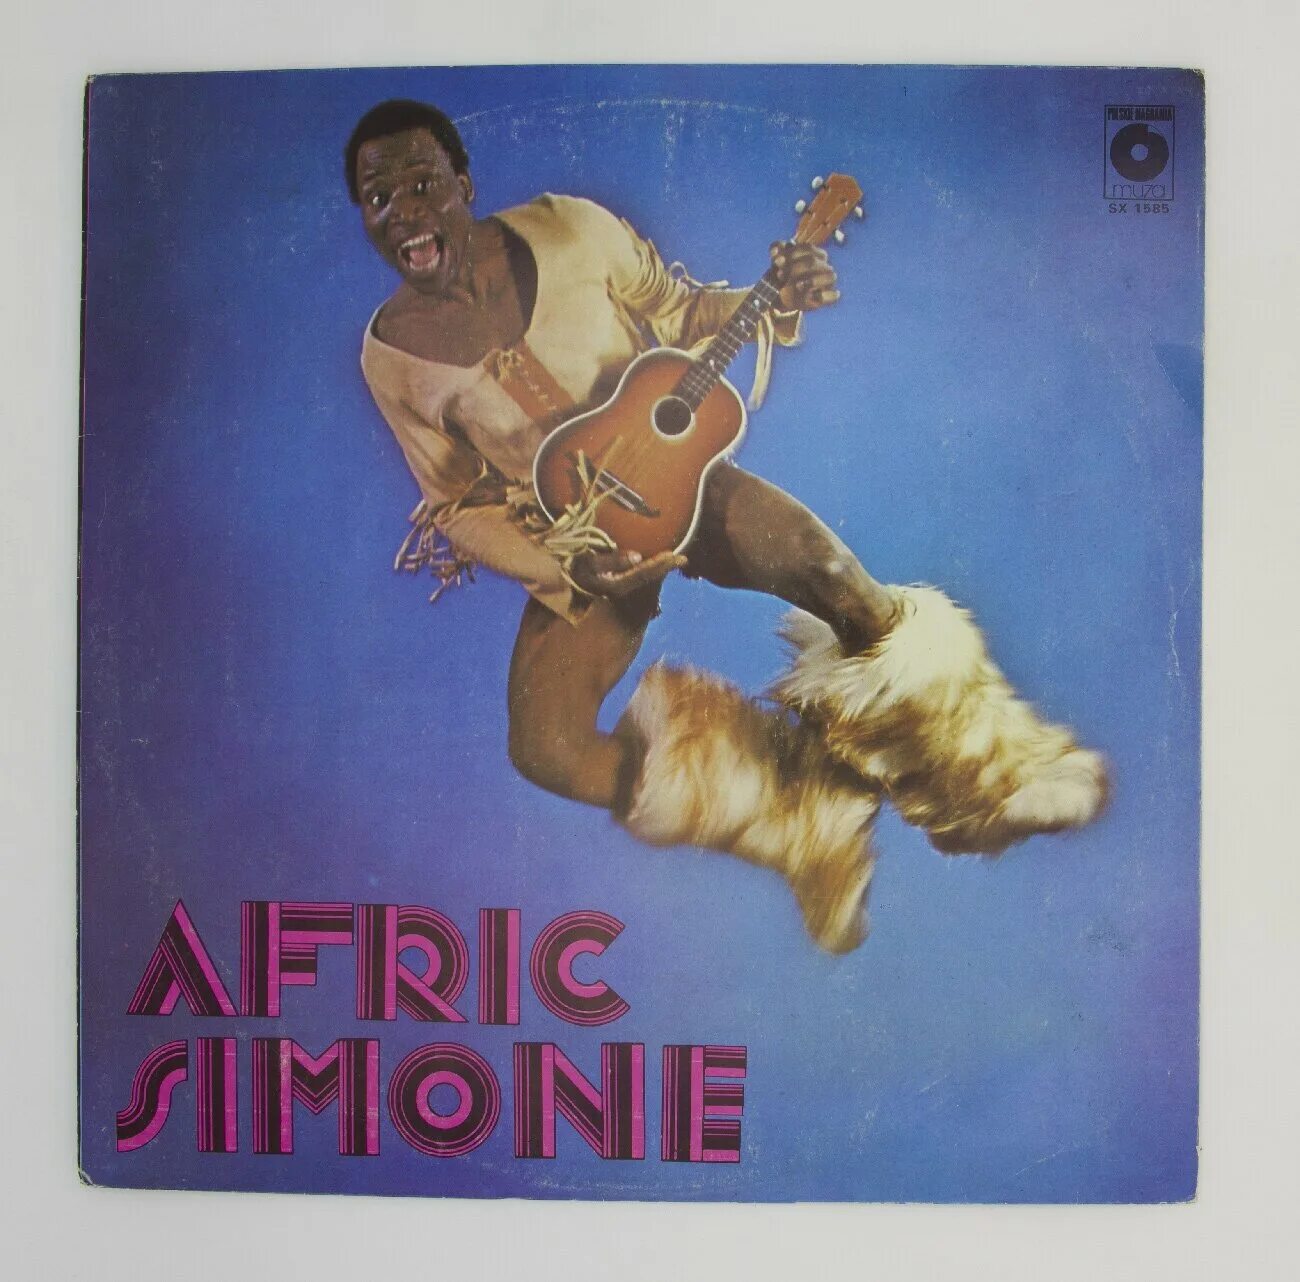 Симон не вините бога. Африк Симон пластинка 1980. Afric Simone. Африк Симон винил. Африк Симон диск винил.